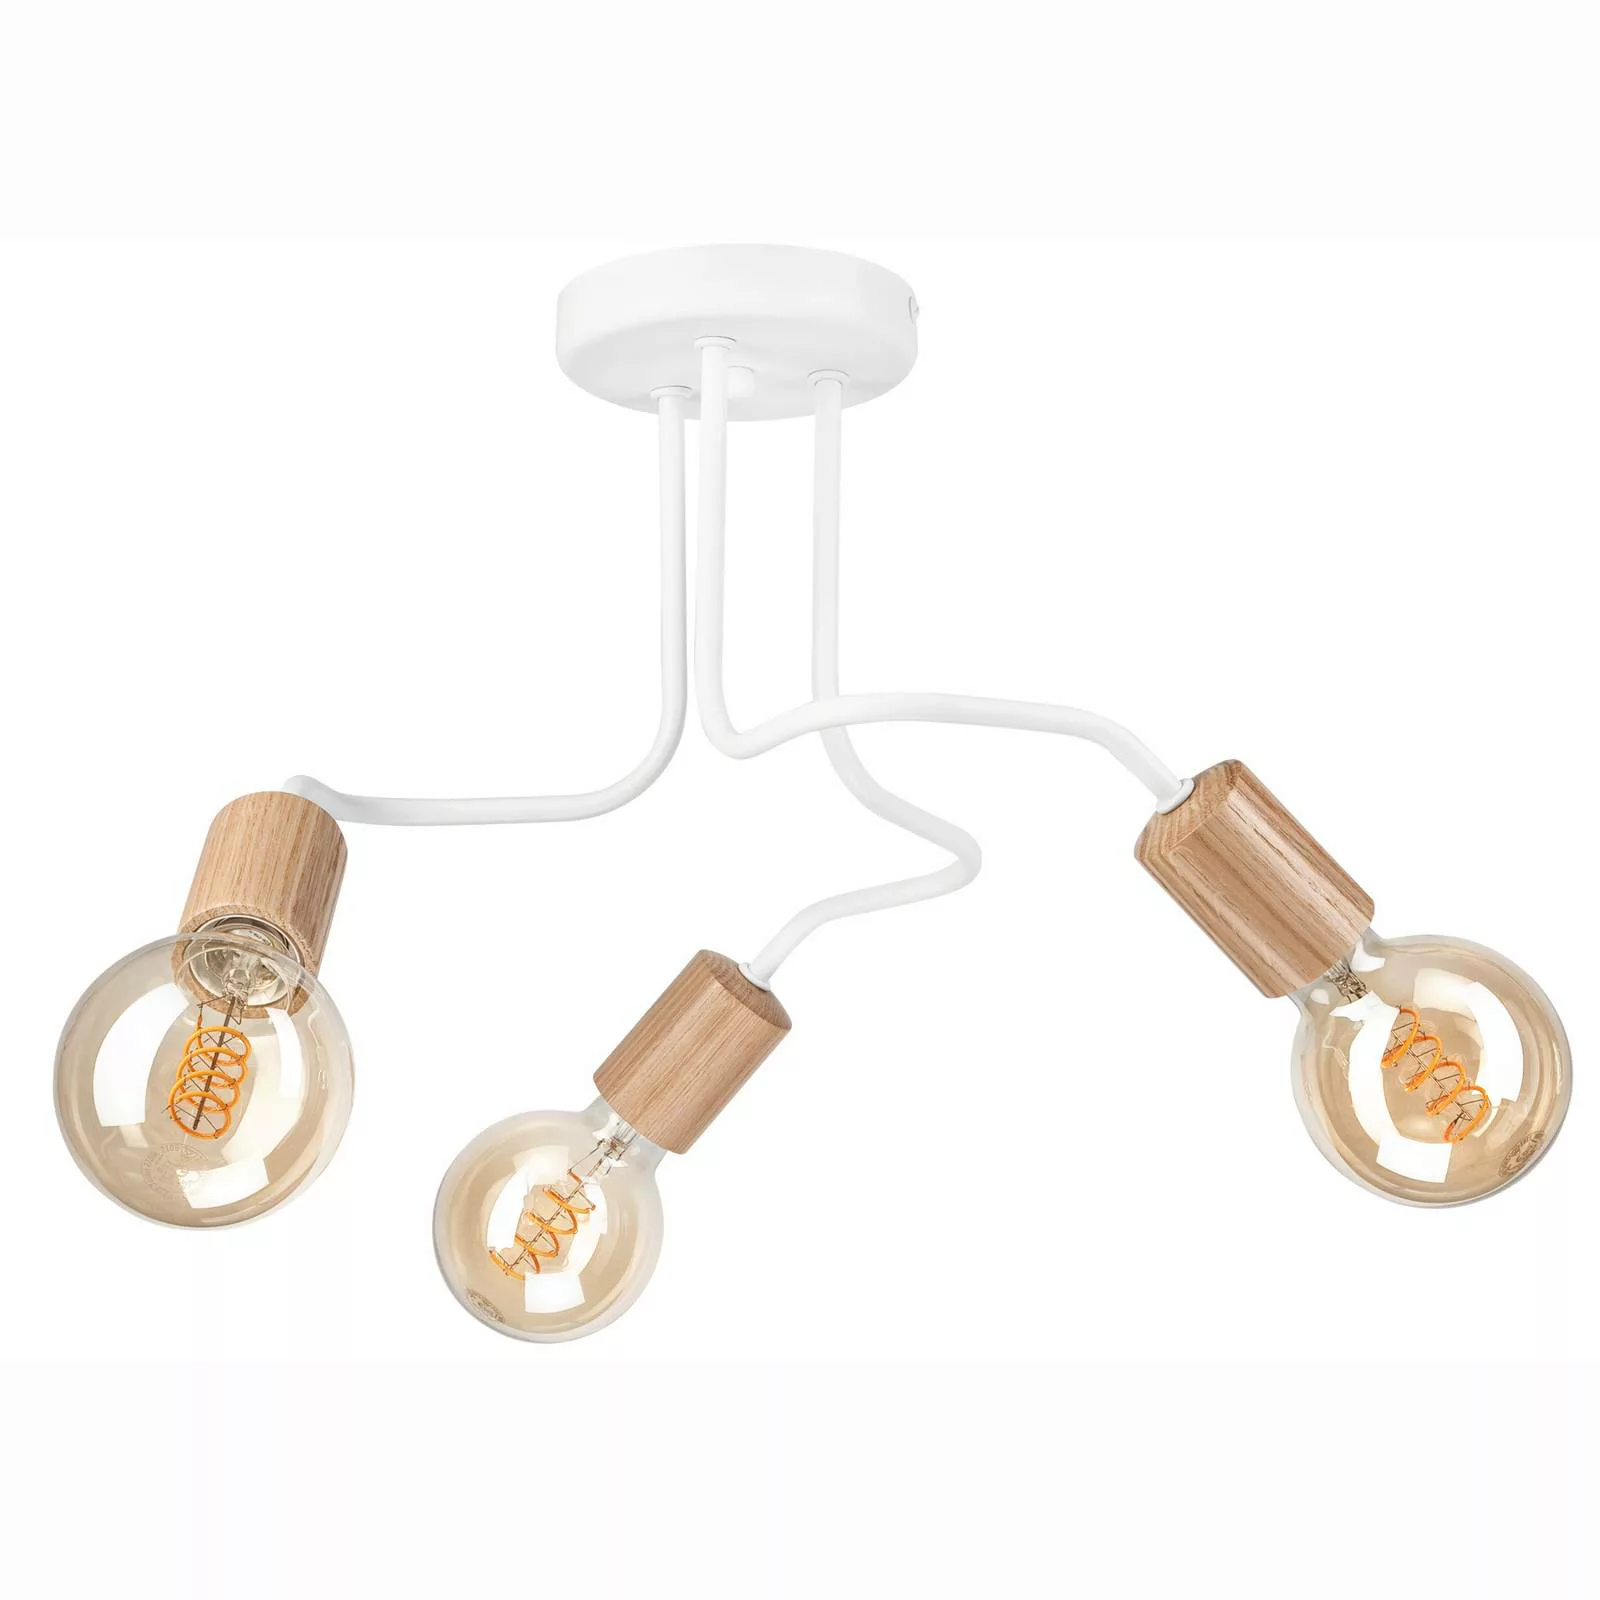 Envostar Joiy Deckenlampe 3-flg verteilt weiß/holz günstig online kaufen